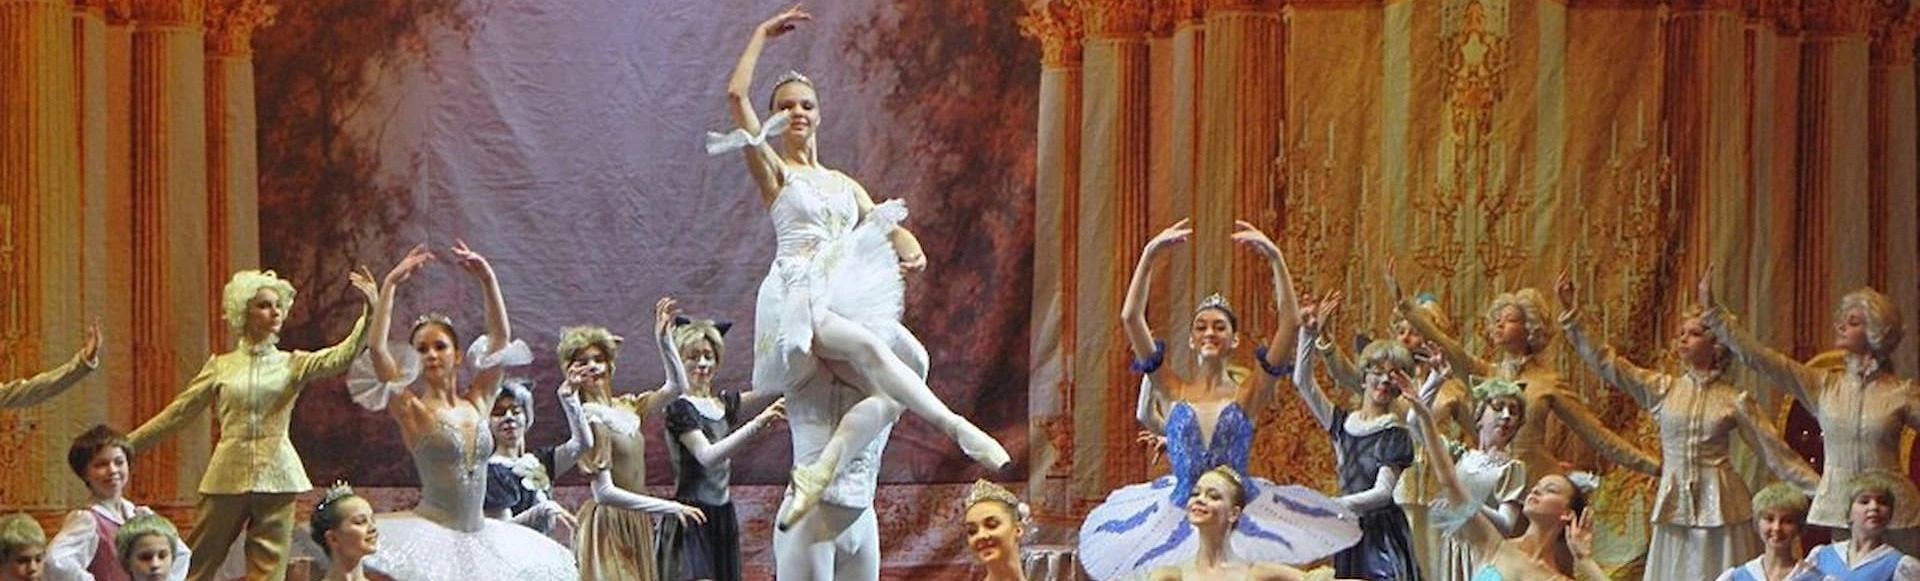 Премьера балета «Спящая красавица» на сцене Эрмитажного театра